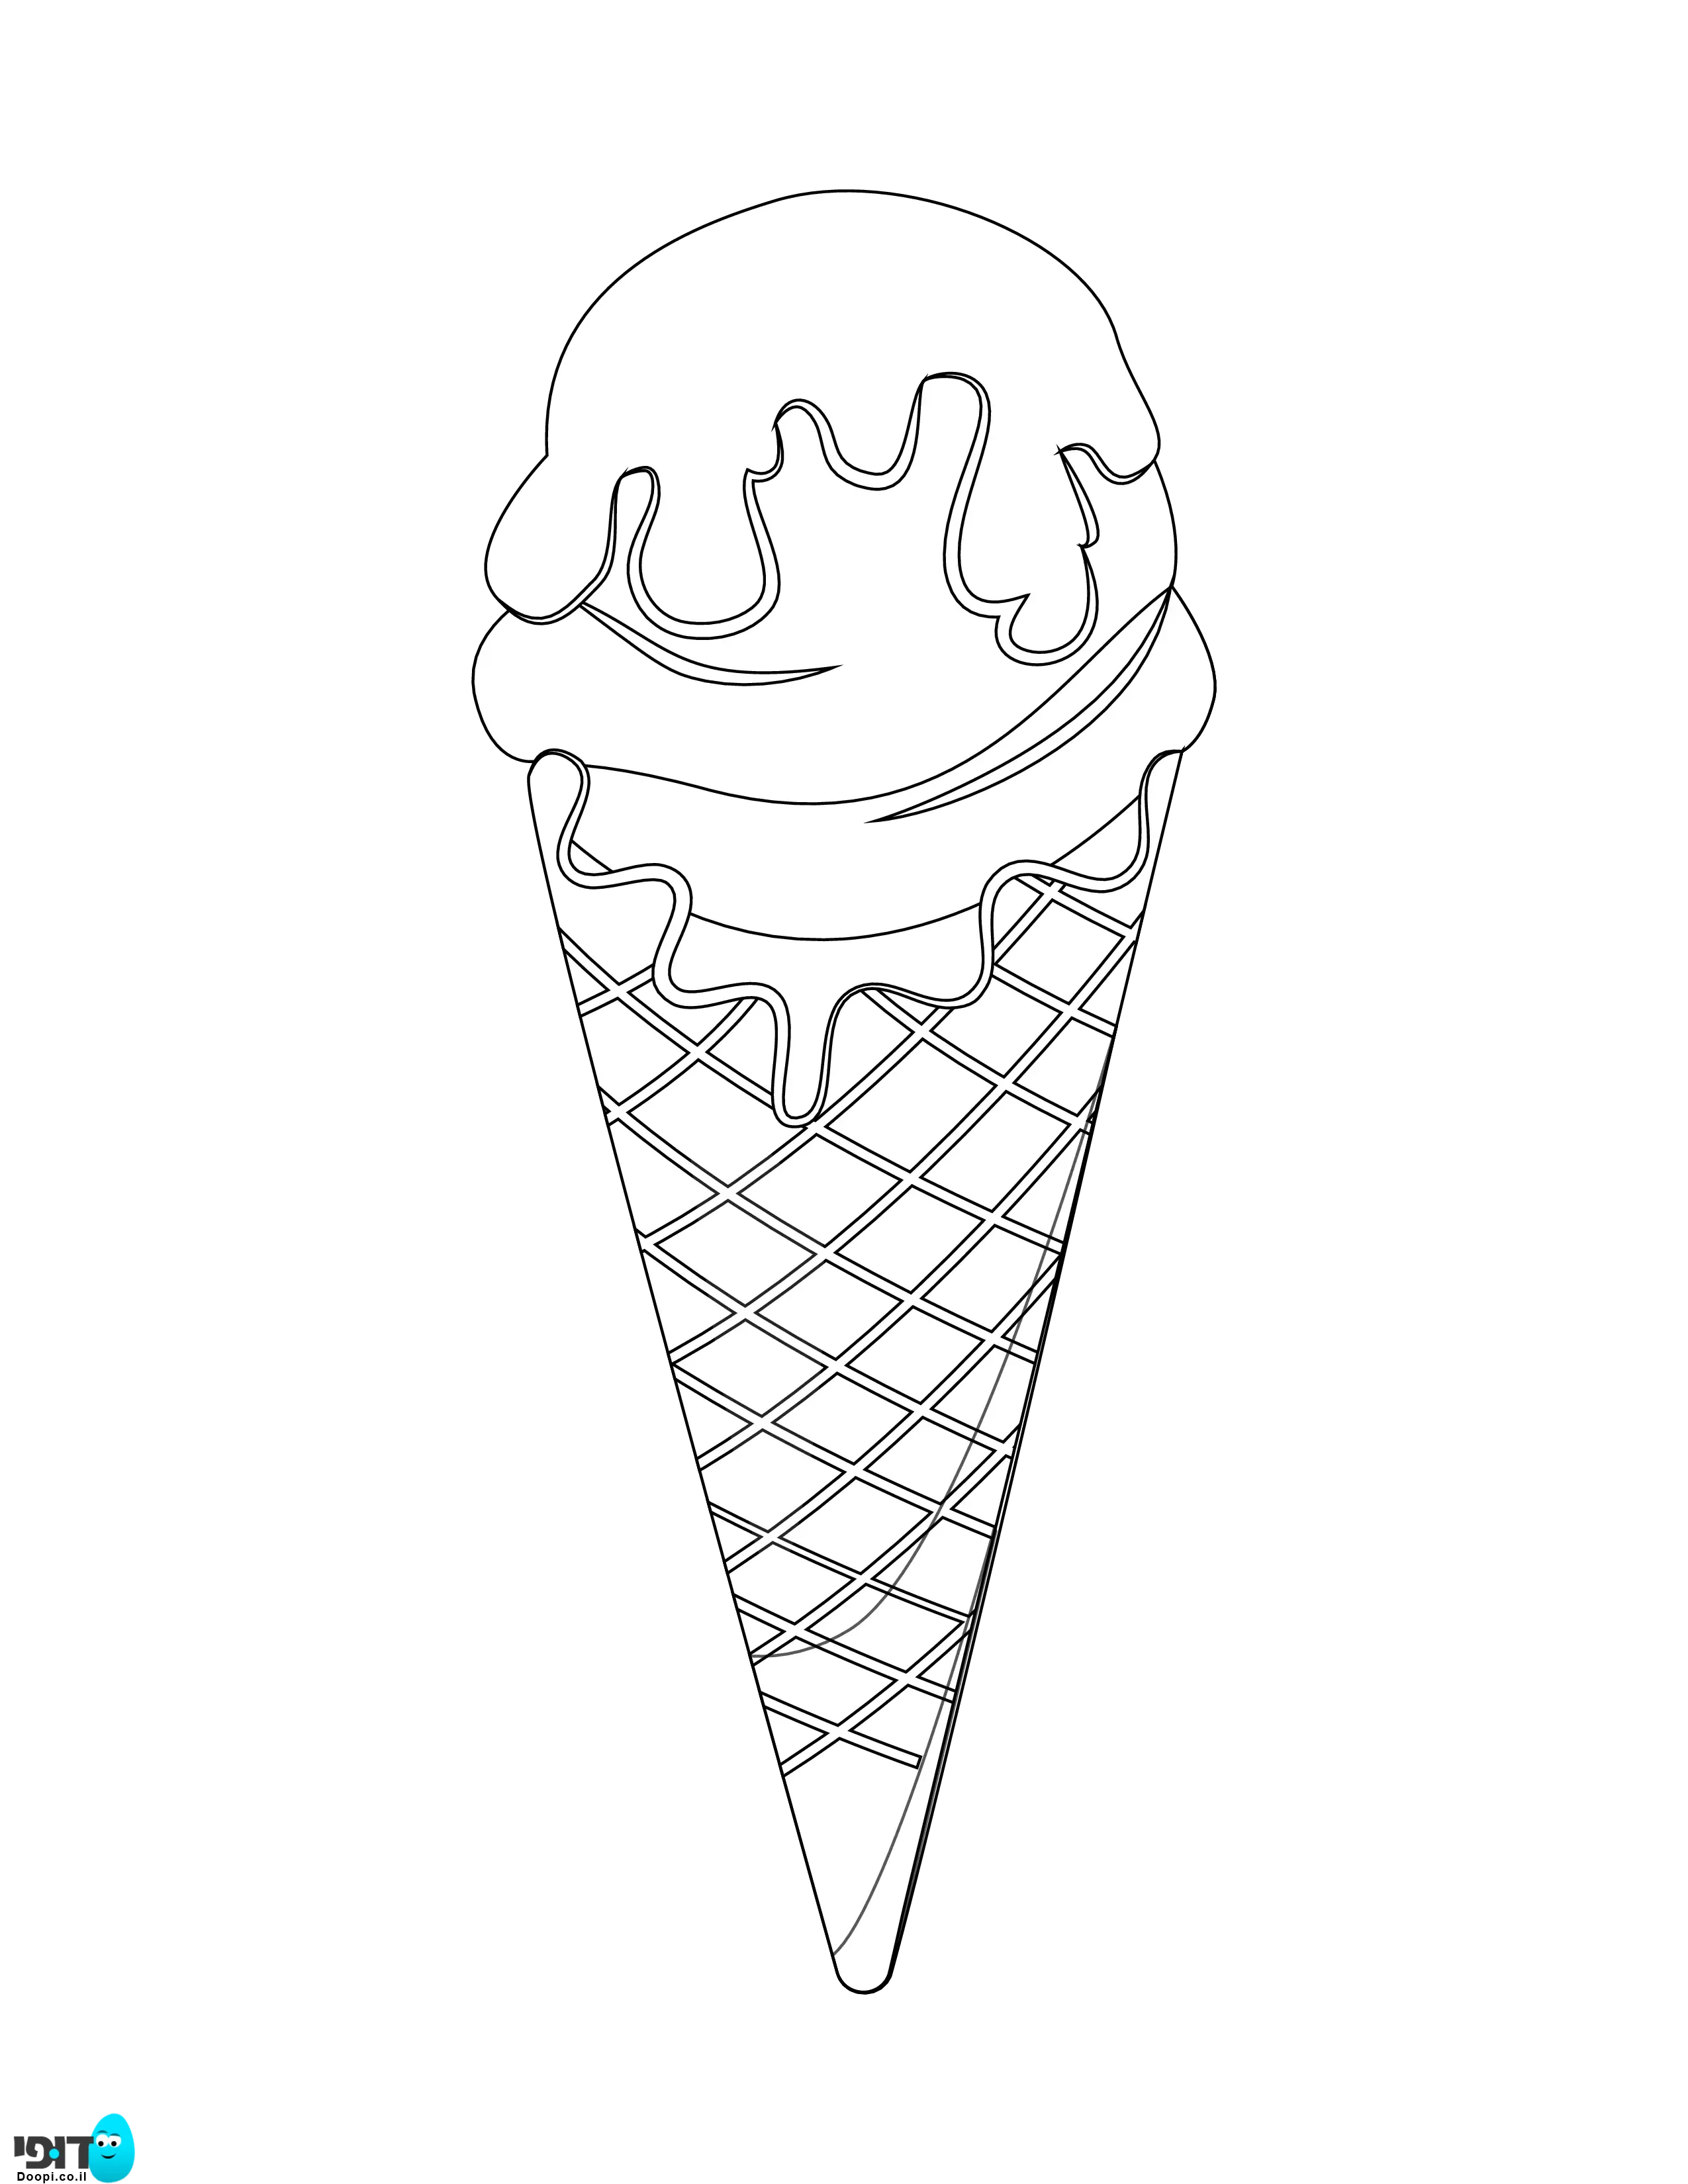 דף צביעה של גלידה בתוך גביעה